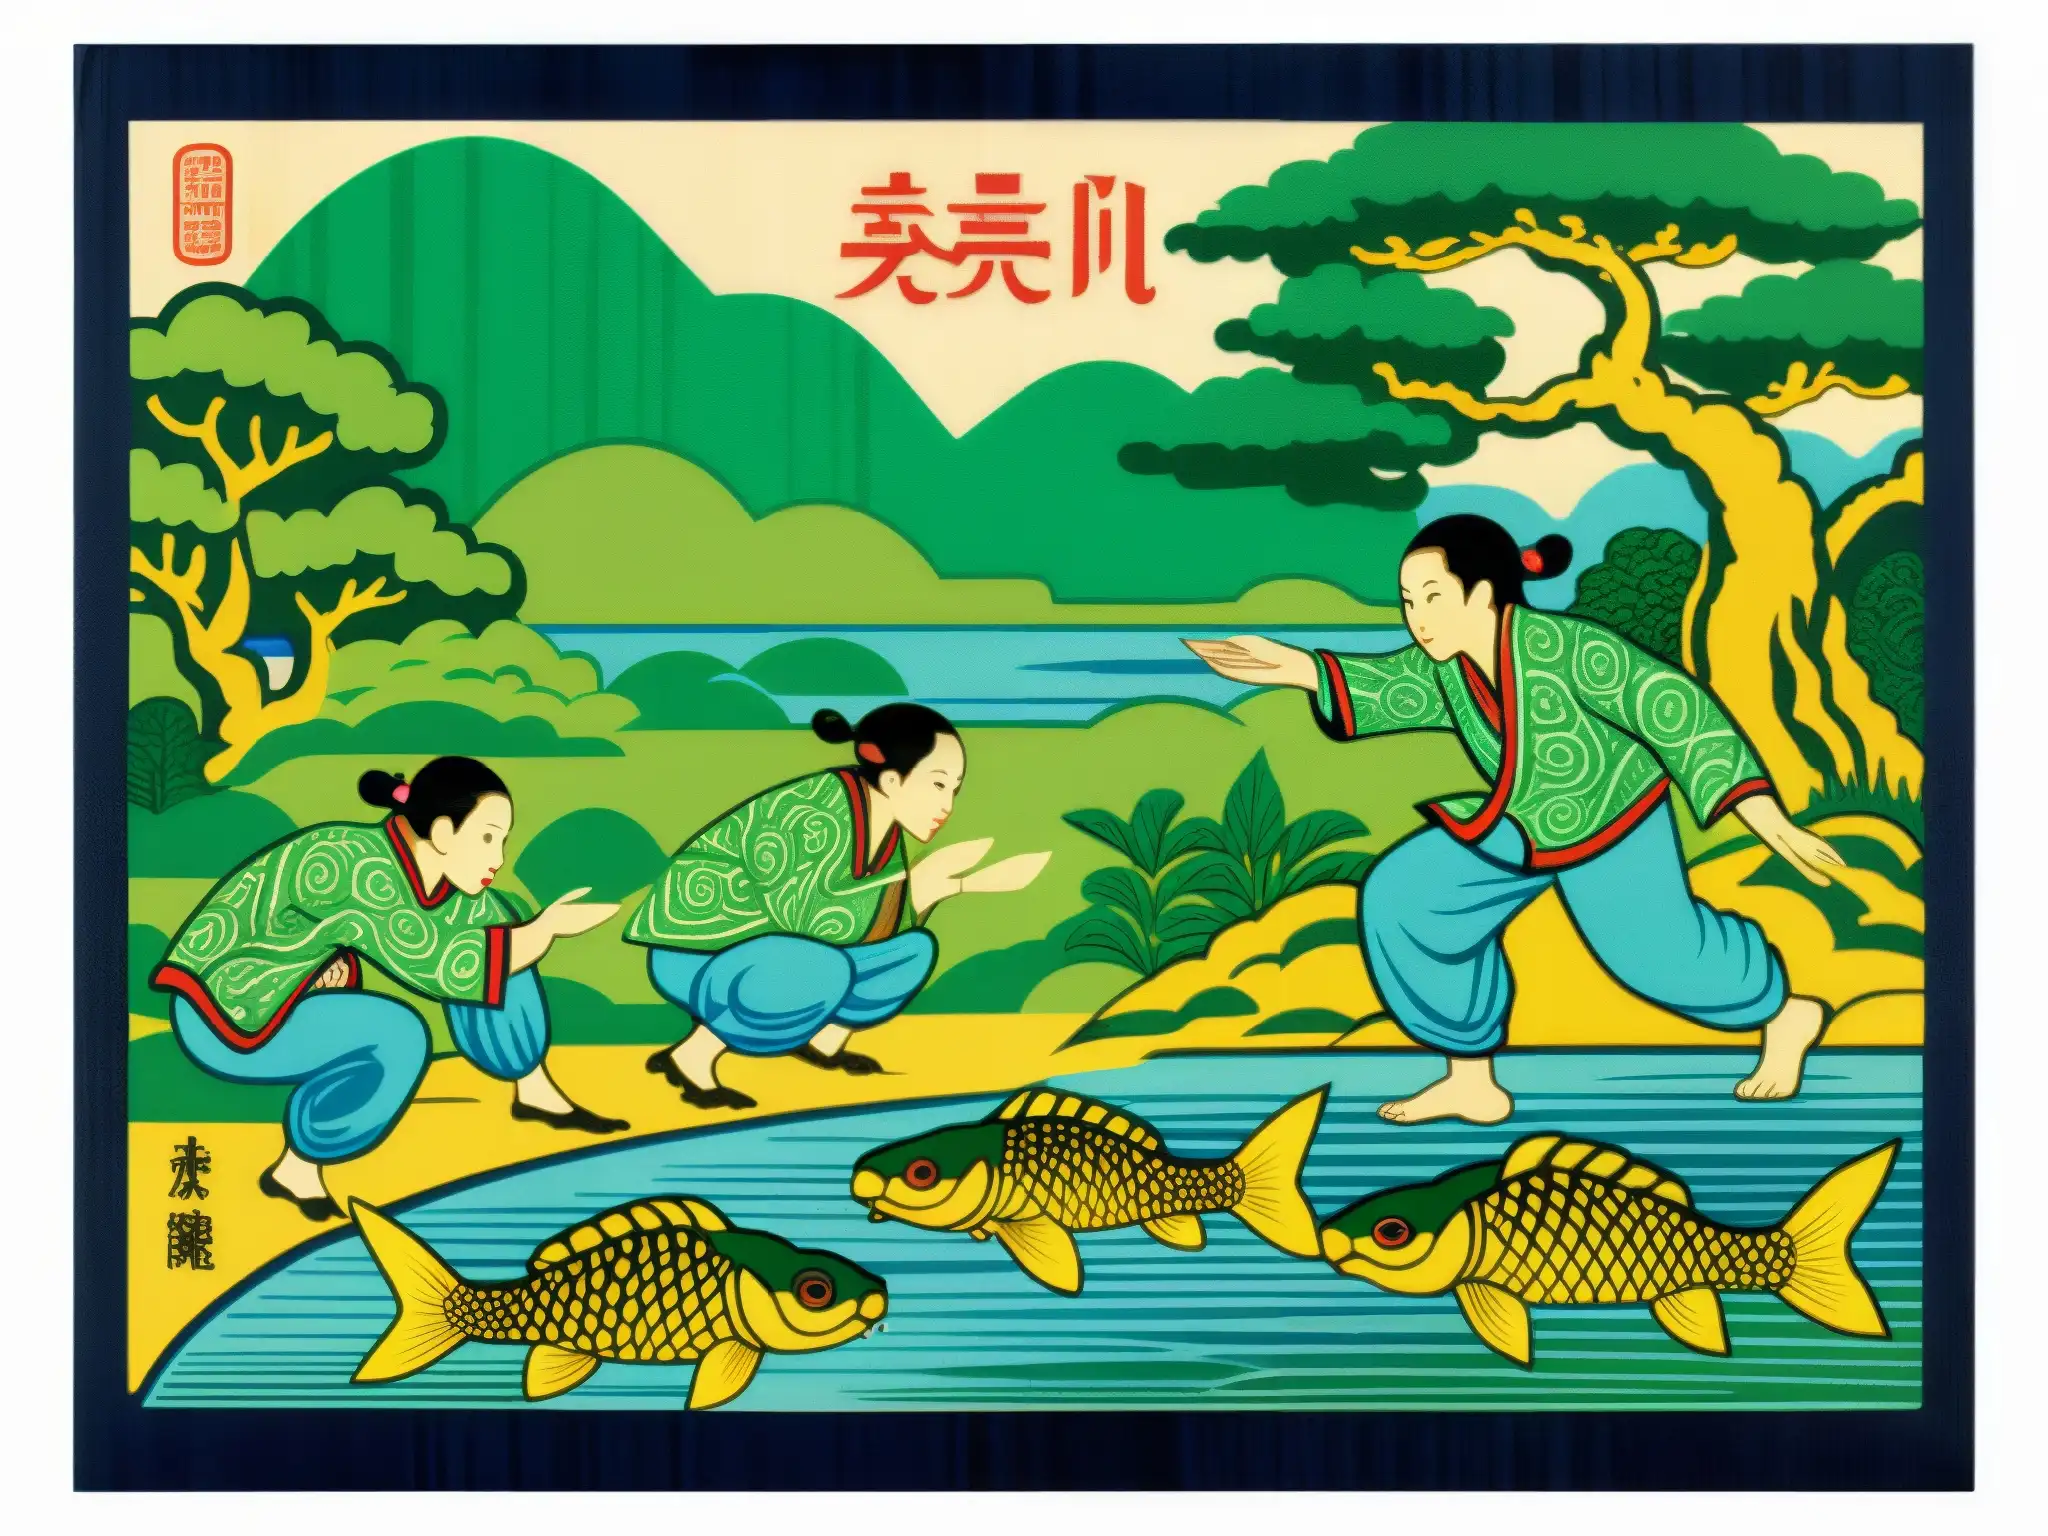 Ilustración detallada de kappa interactuando con humanos en un río, rodeados de exuberante naturaleza y arquitectura japonesa